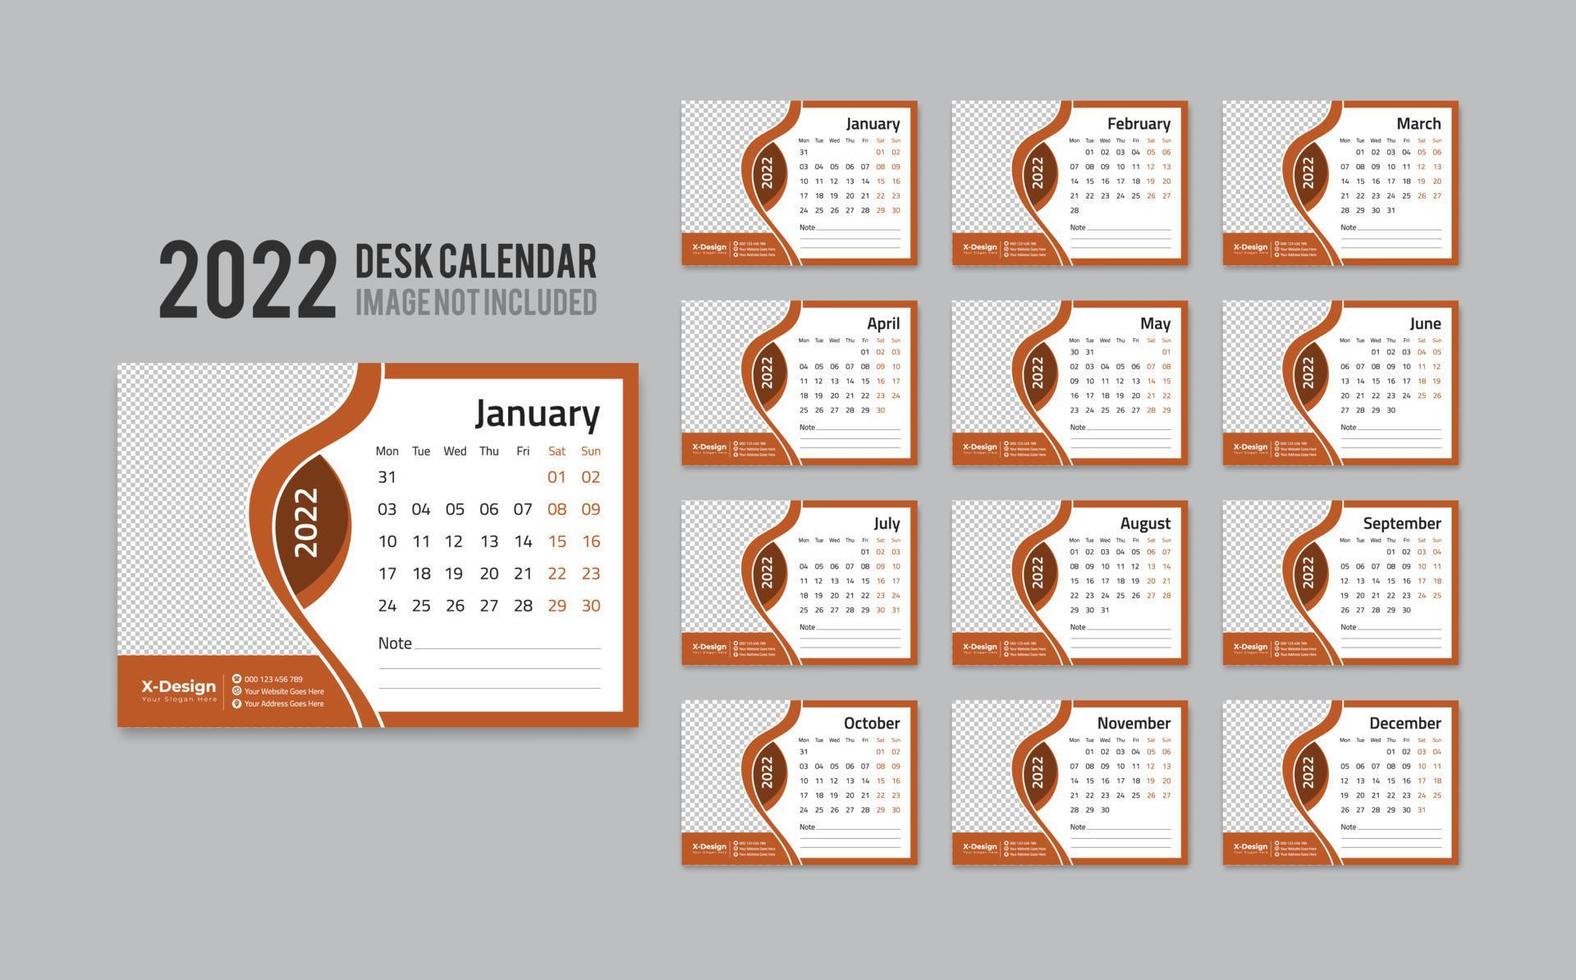 imprimir modelo de calendário de mesa pronto para 2022 anos, calendário de mesa mensal de escritório 2022 semana começa na segunda-feira, planejador anual vetor